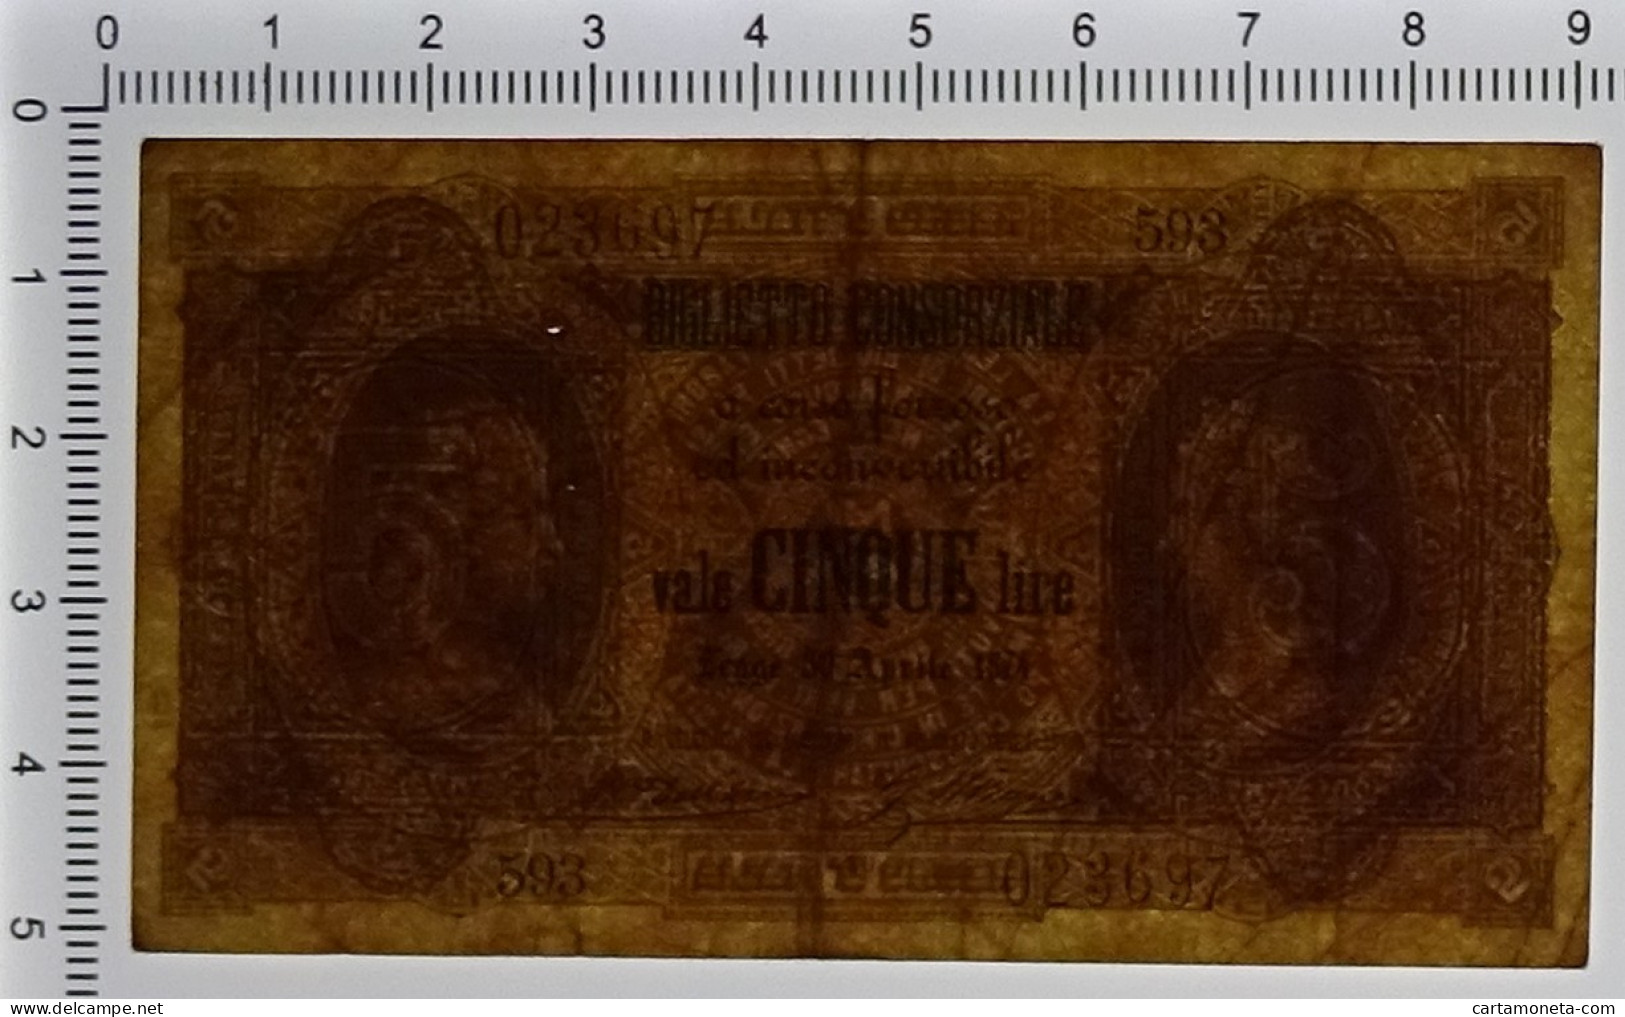 5 LIRE BIGLIETTO CONSORZIALE REGNO D'ITALIA 30/04/1874 BB+ - Biglietto Consorziale